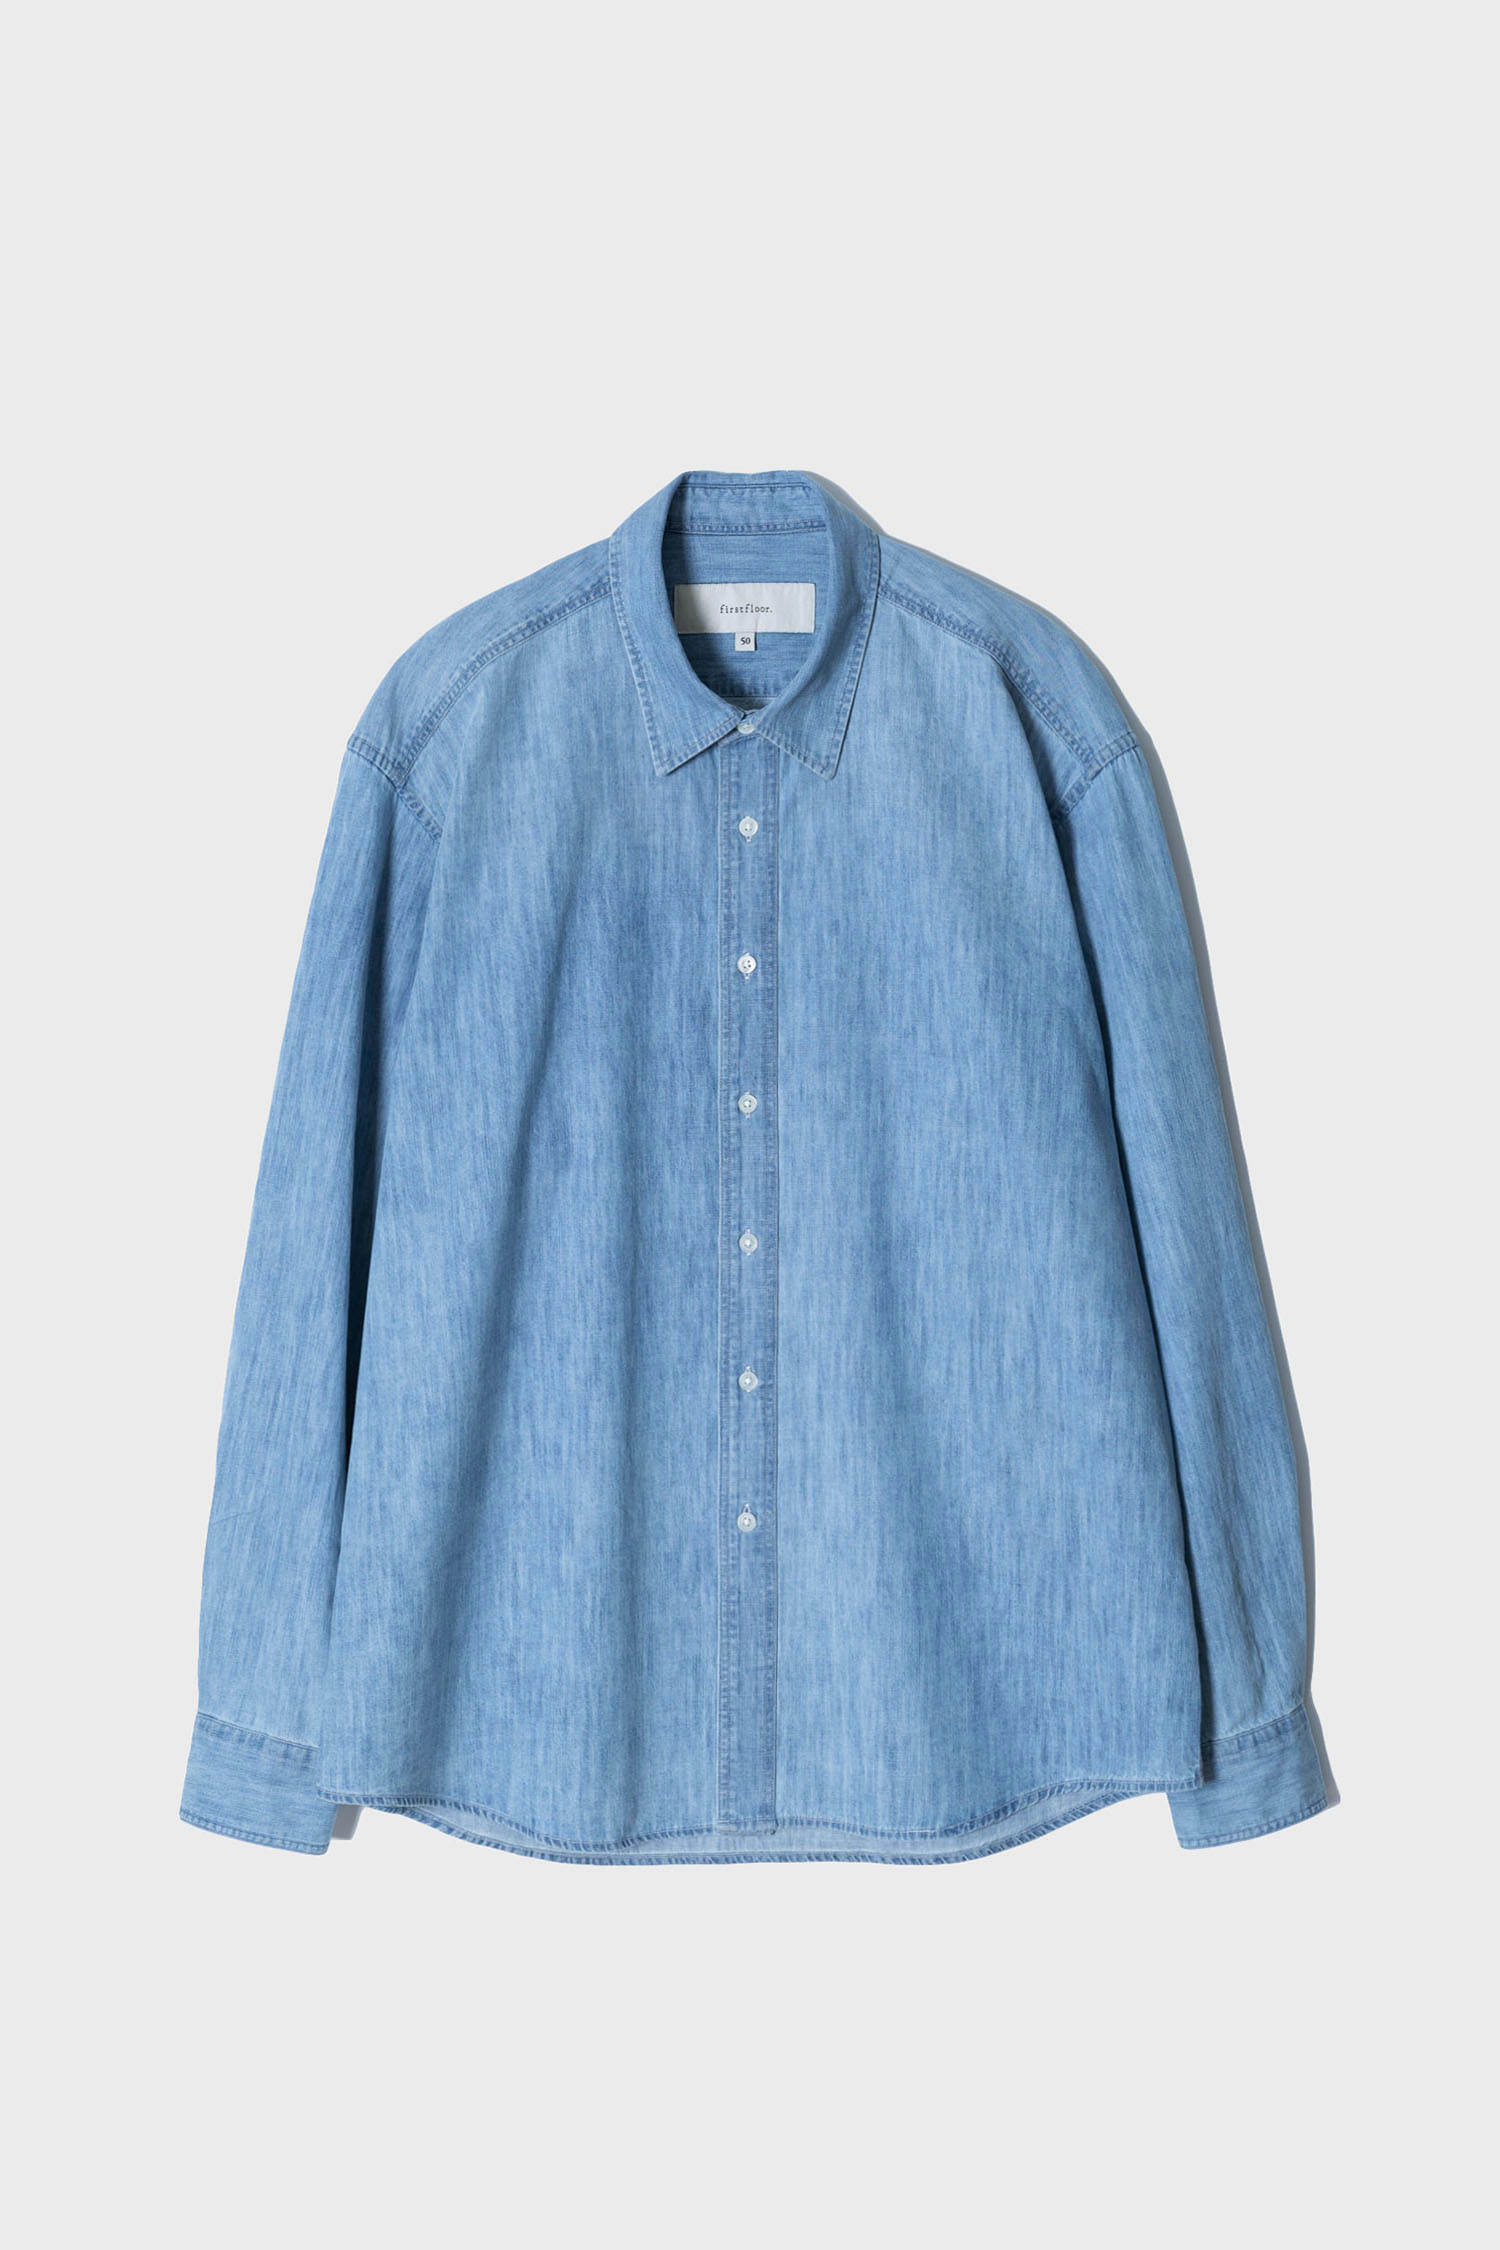 Washed denim shirt (light blue)